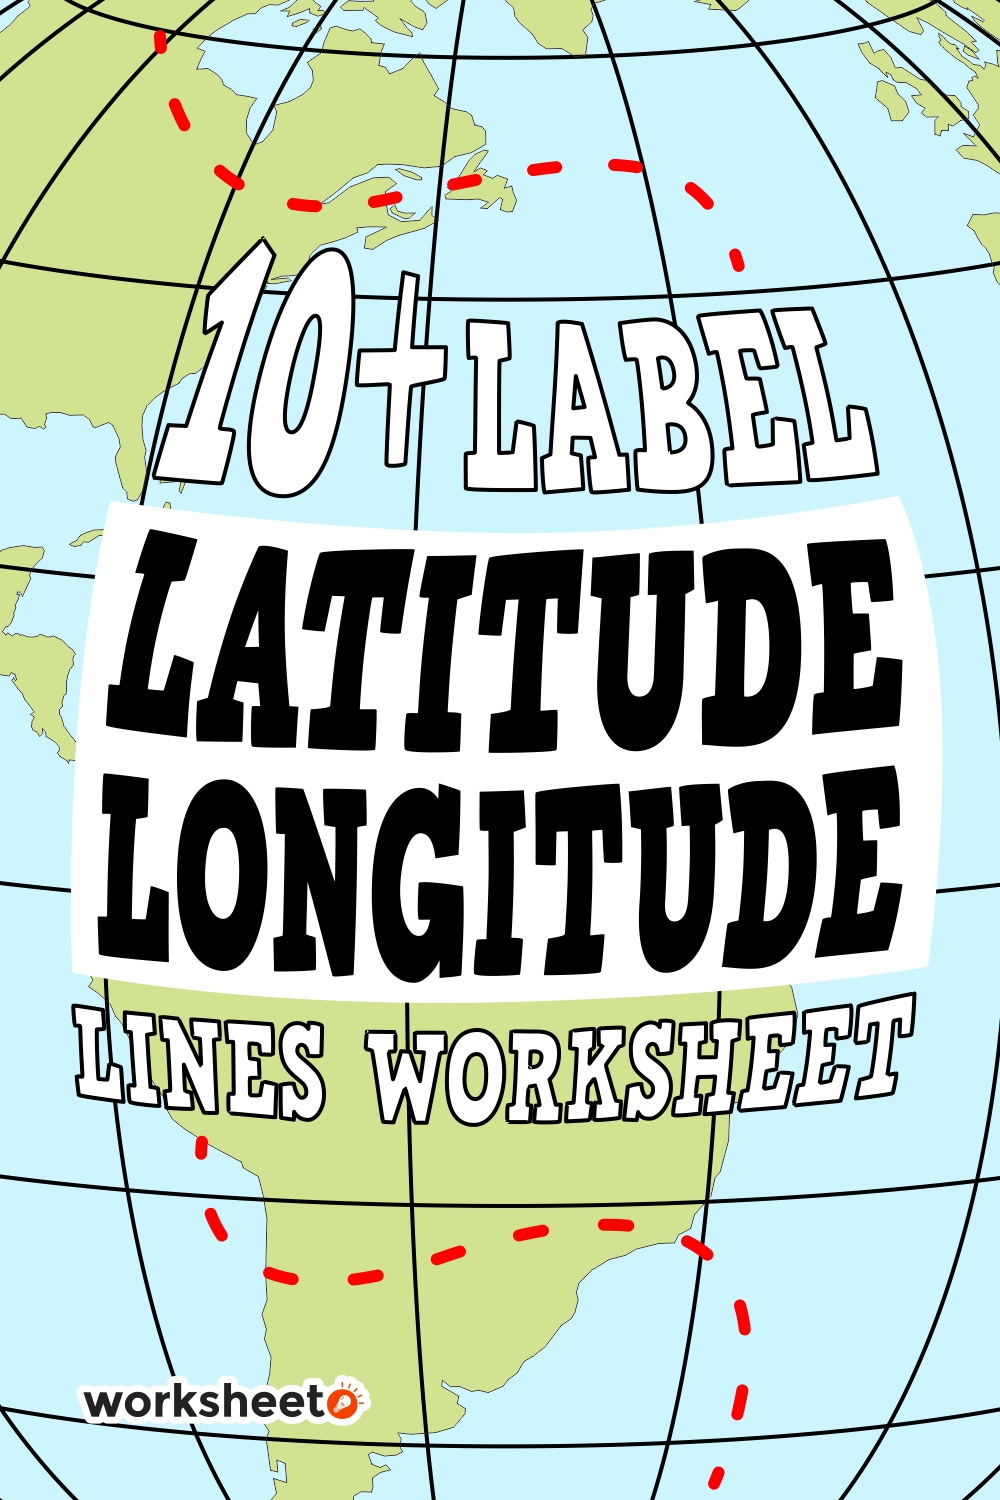 14 Images of Label Latitude Longitude Lines Worksheet